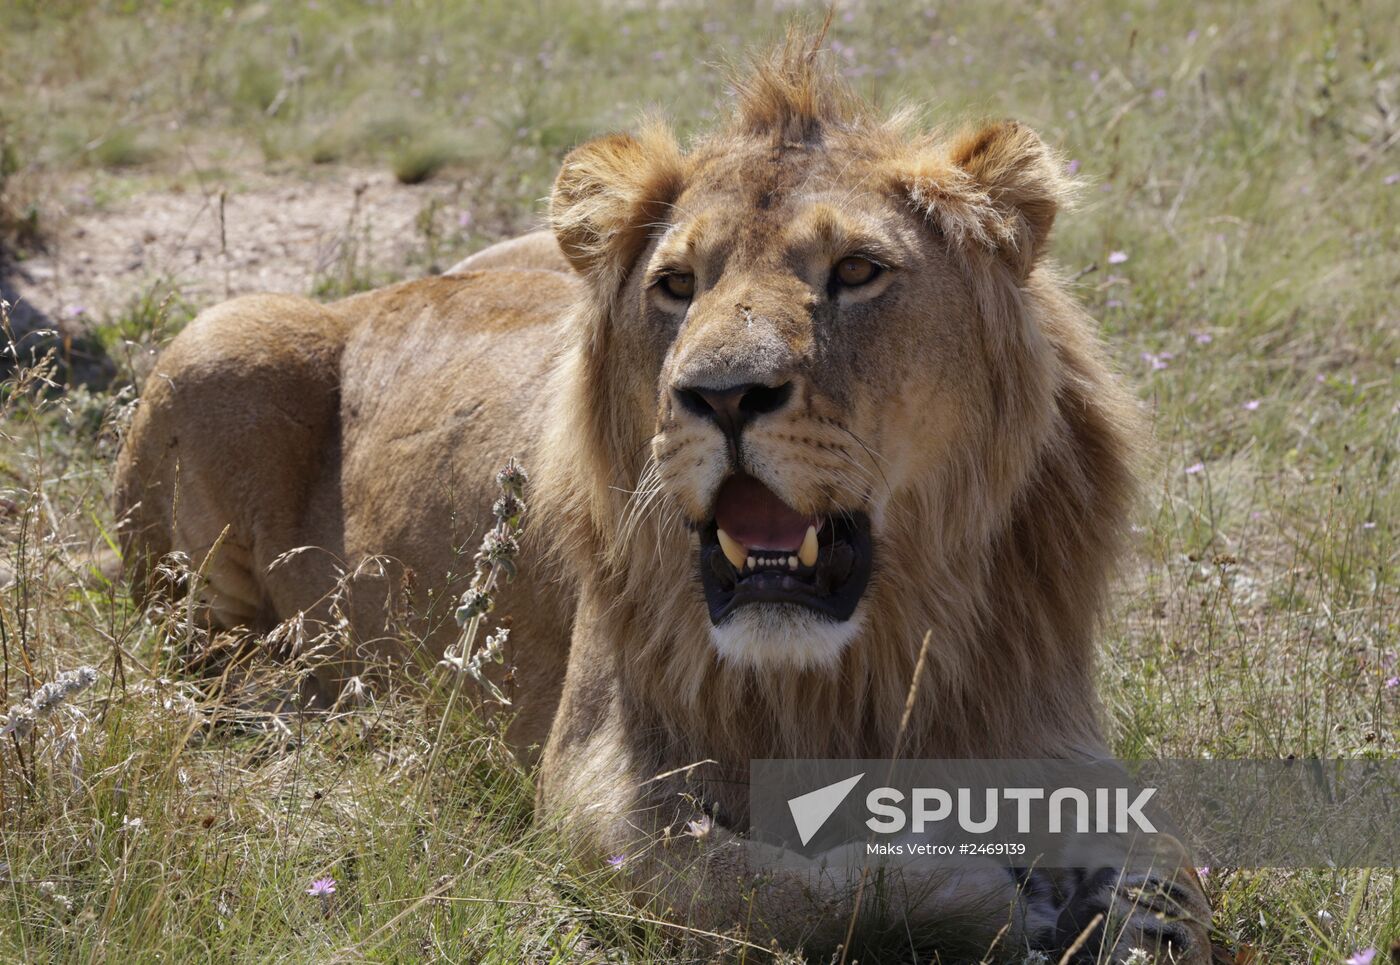 Taigan lion park in Crimea